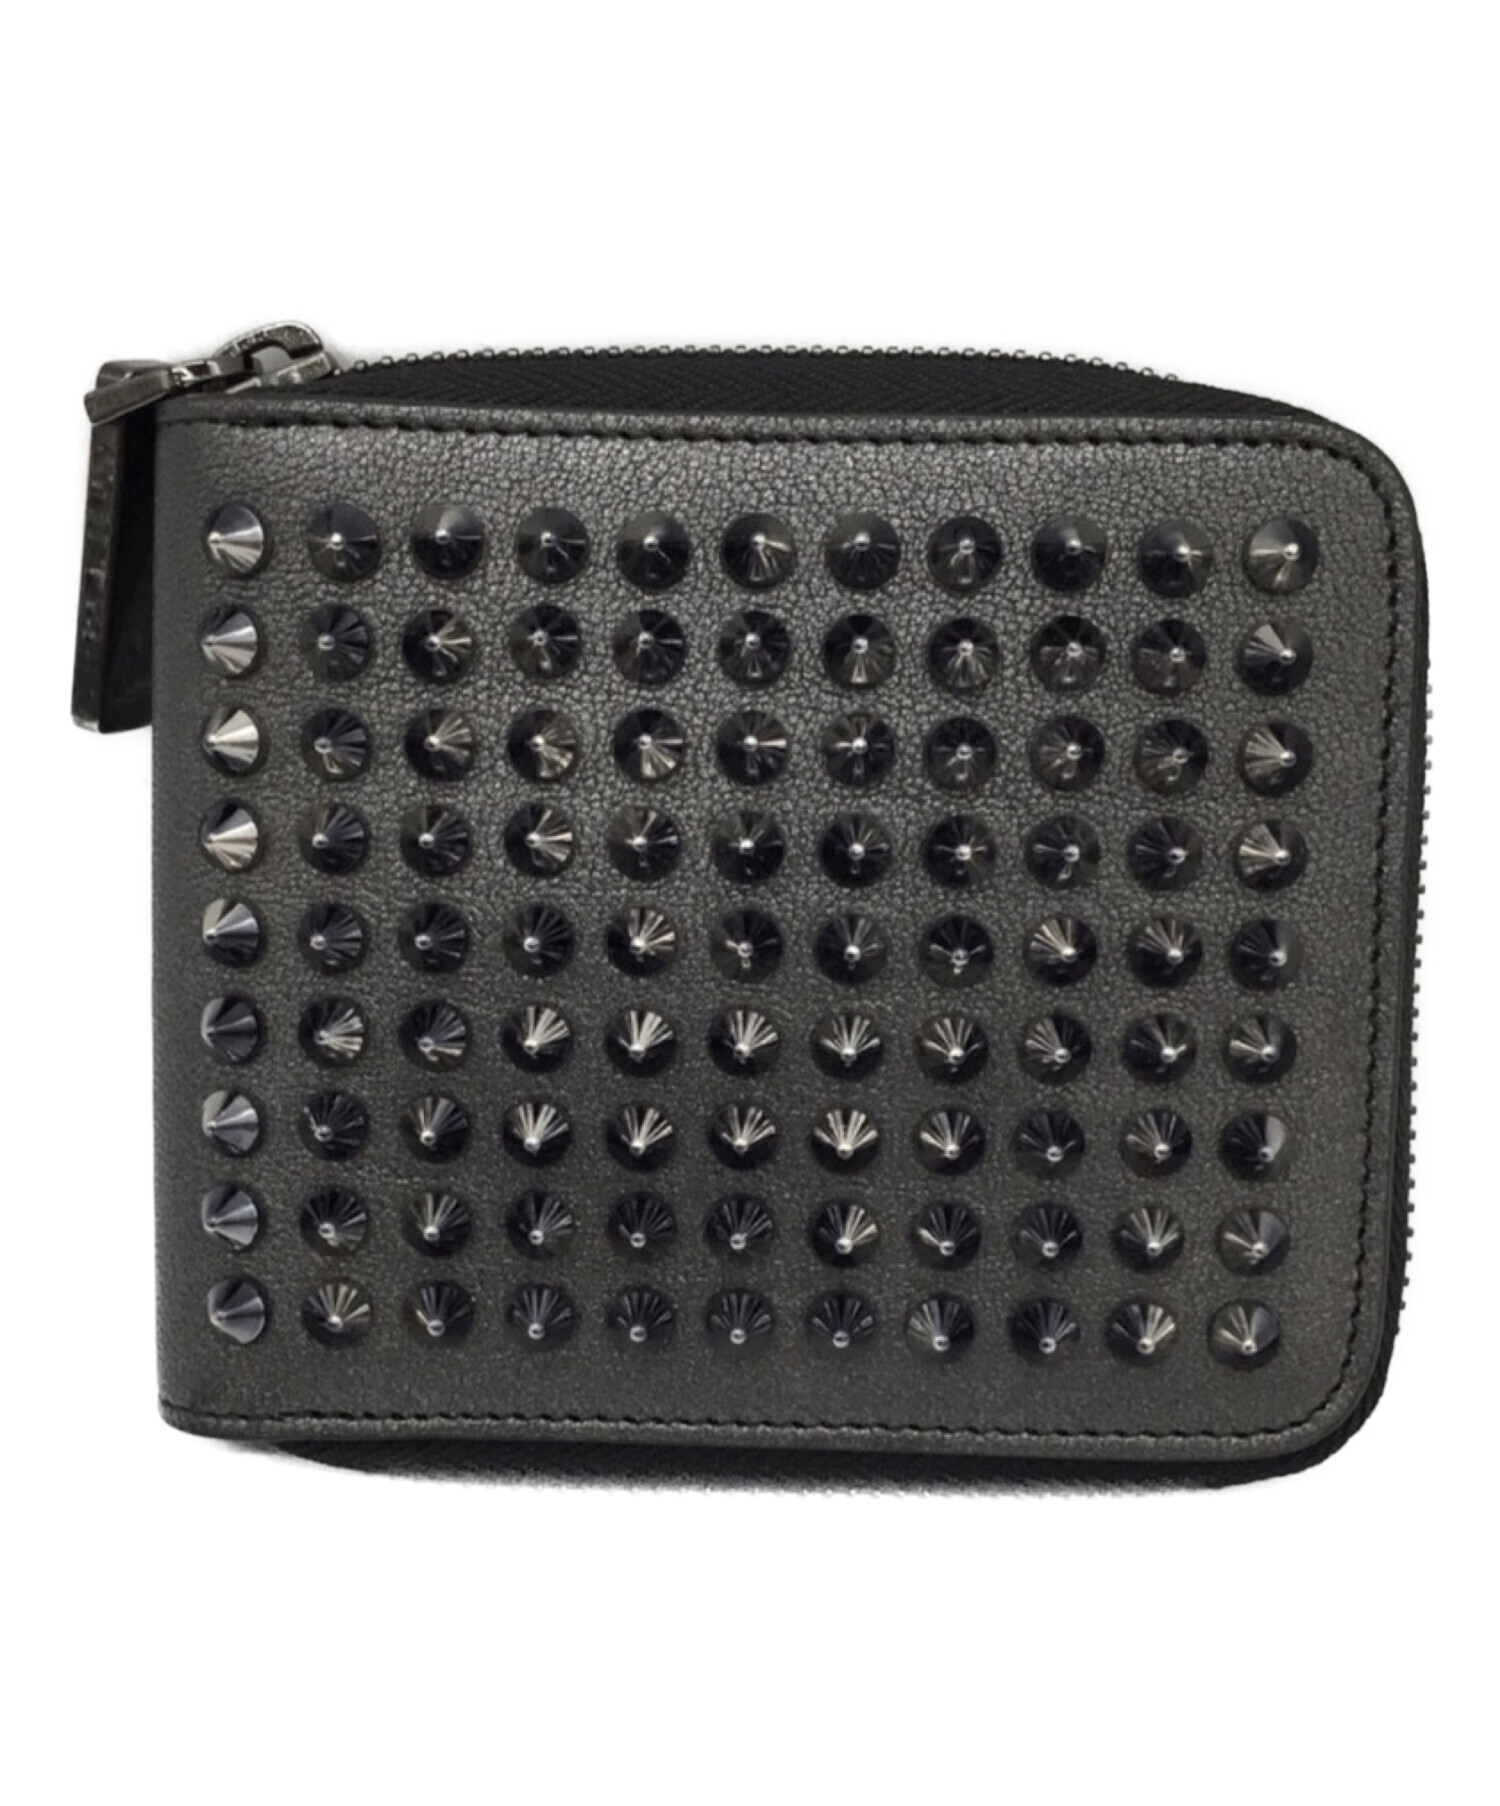 クリスチャンルブタン 財布ファッション小物 - 長財布